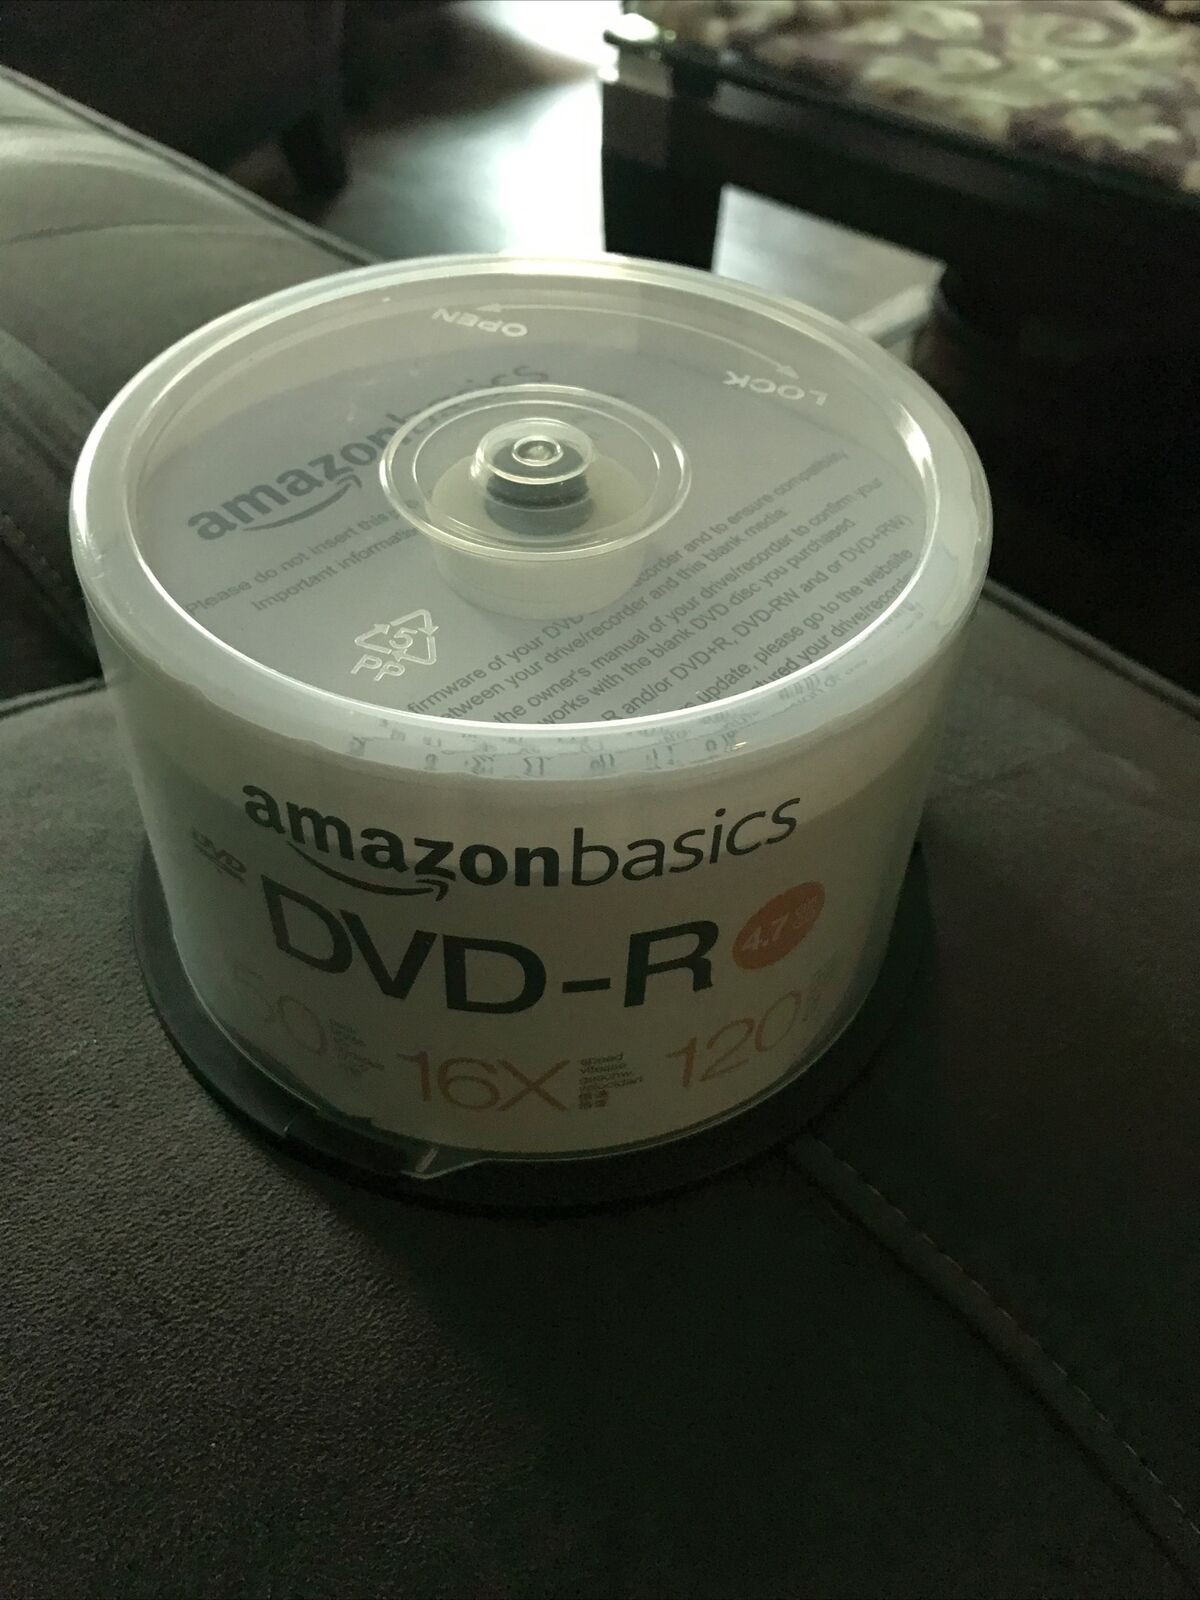 Amazon Basics DVD-R 4.7 GB 